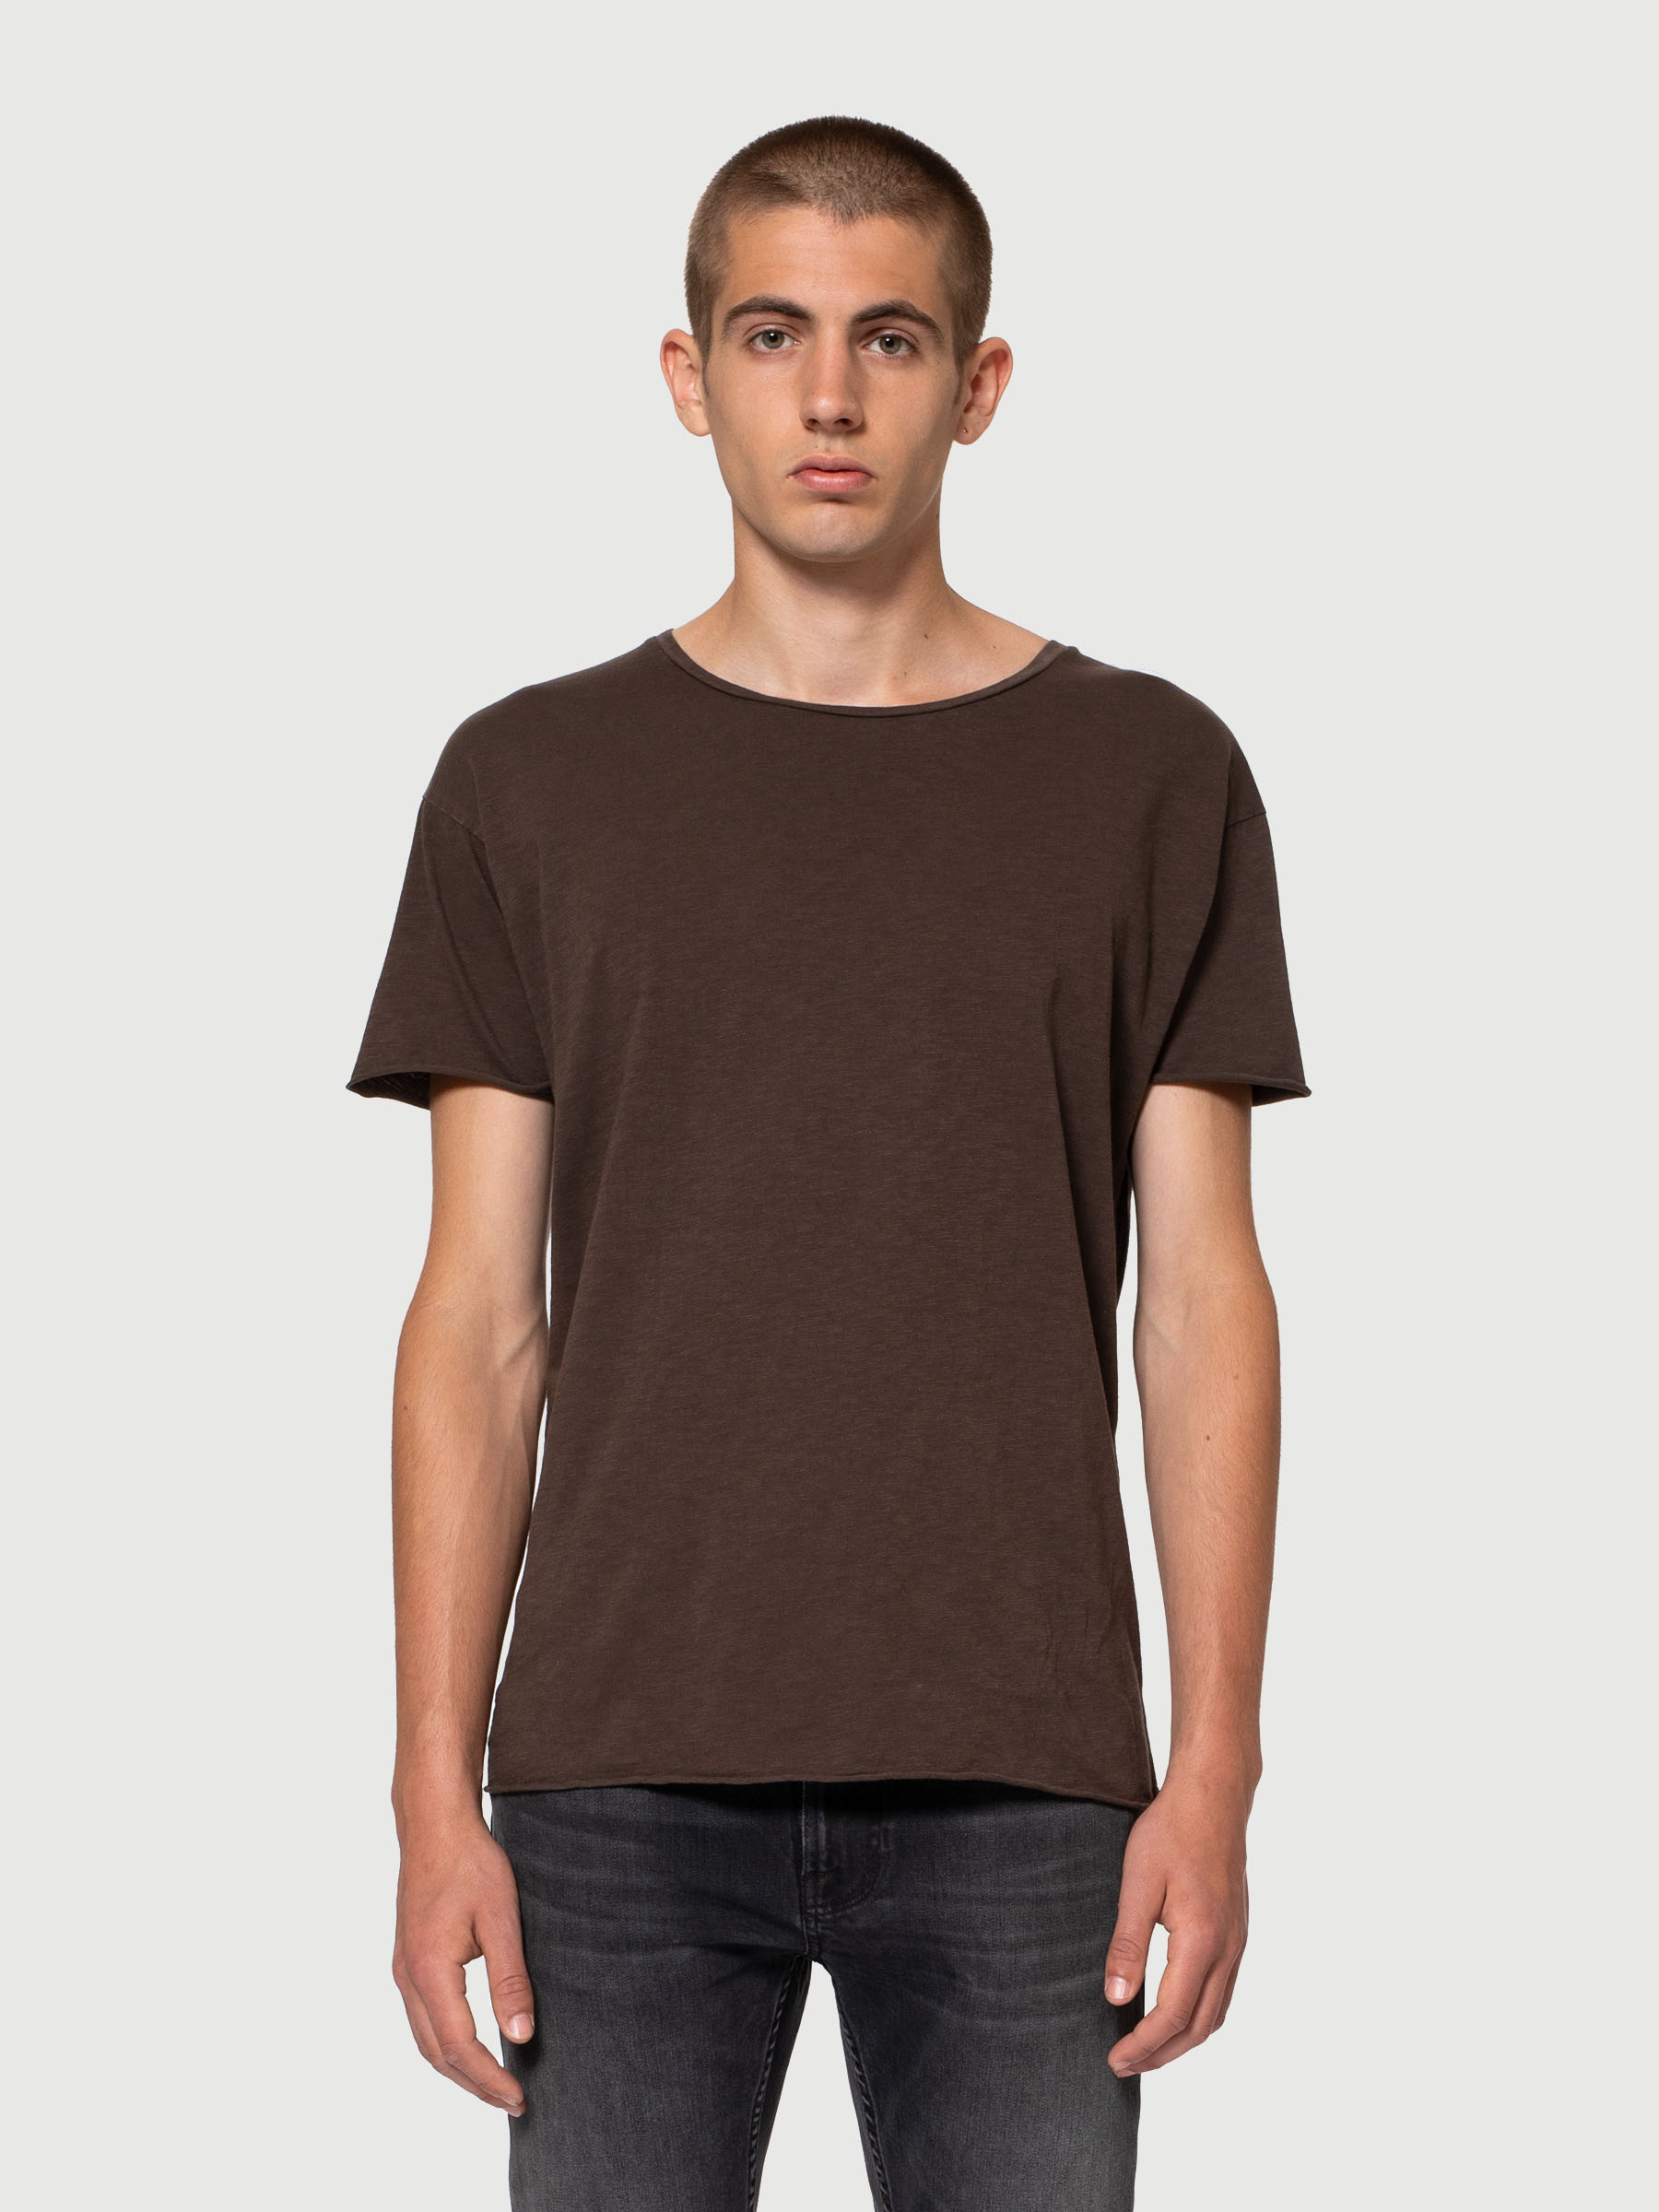 Basic T-Shirt Roger Slub Bruno